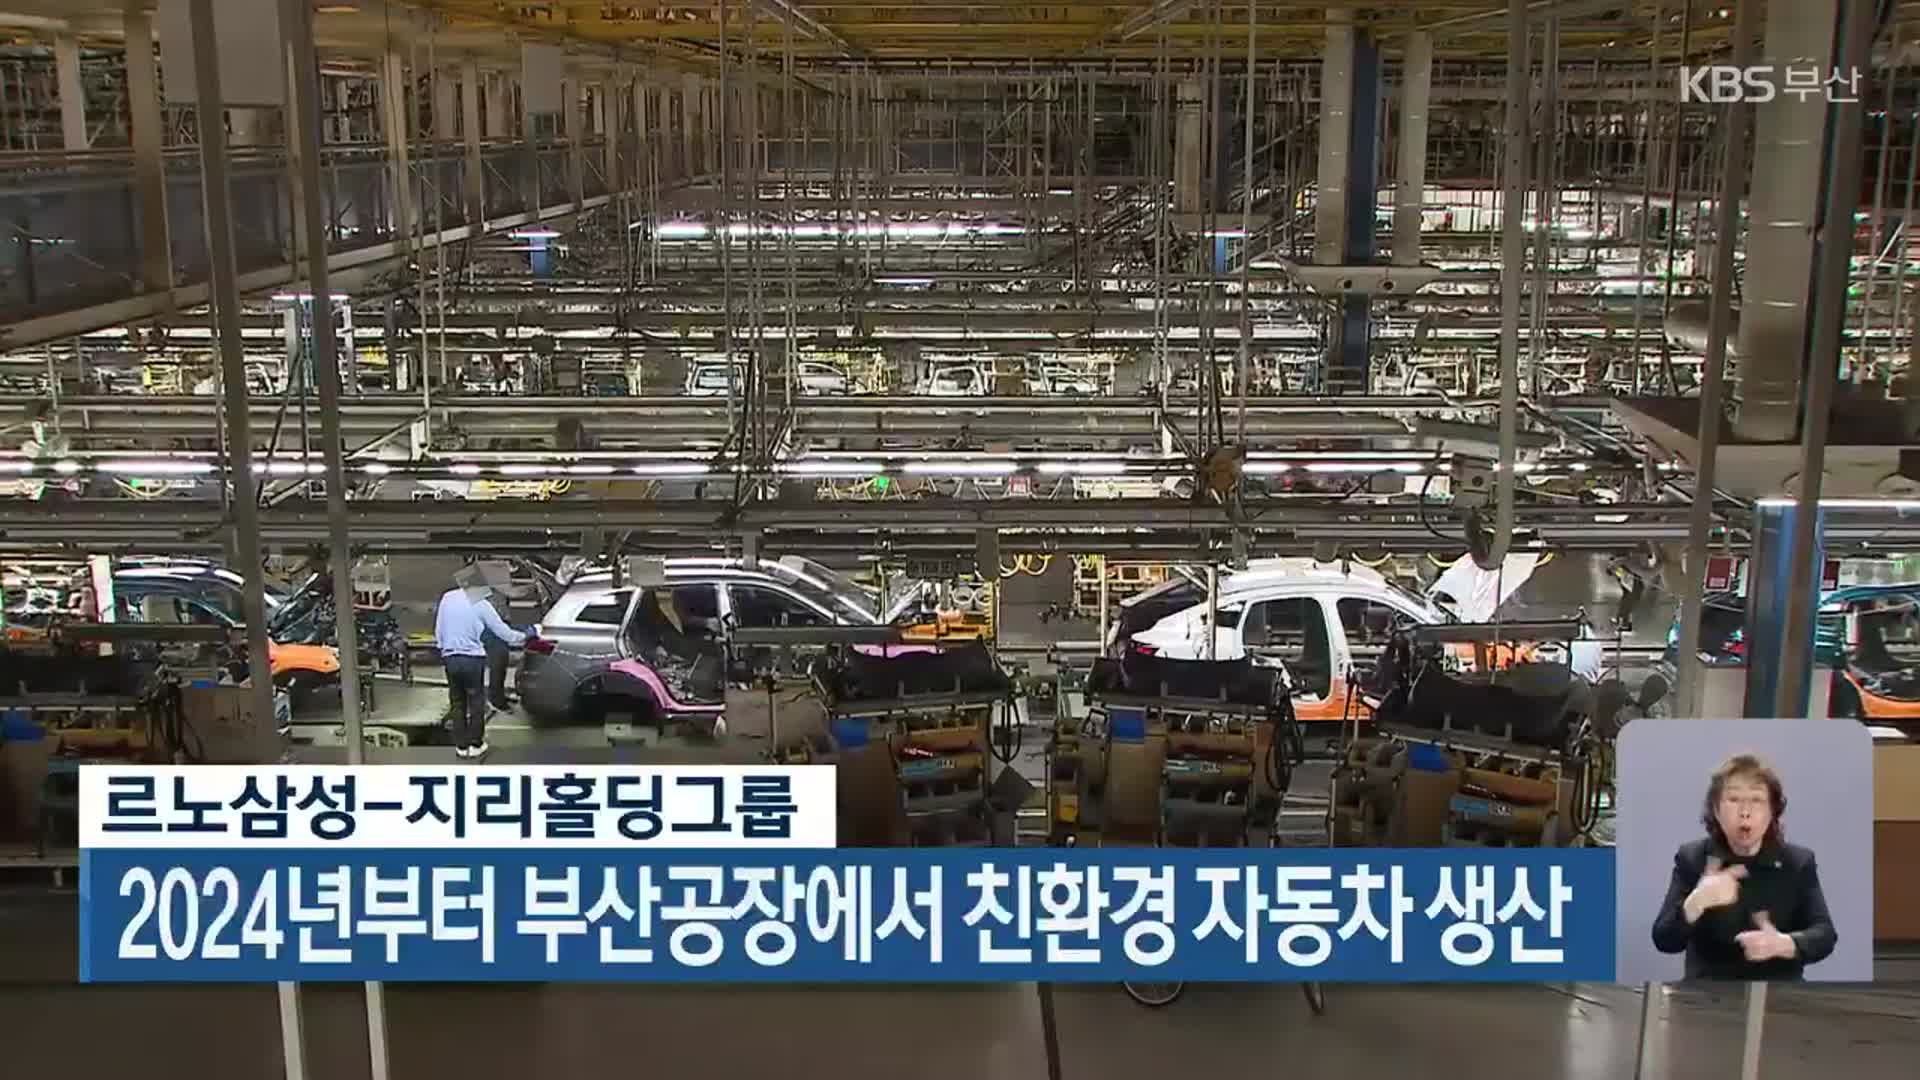 르노삼성-지리홀딩그룹, 2024년부터 부산공장에서 친환경 자동차 생산